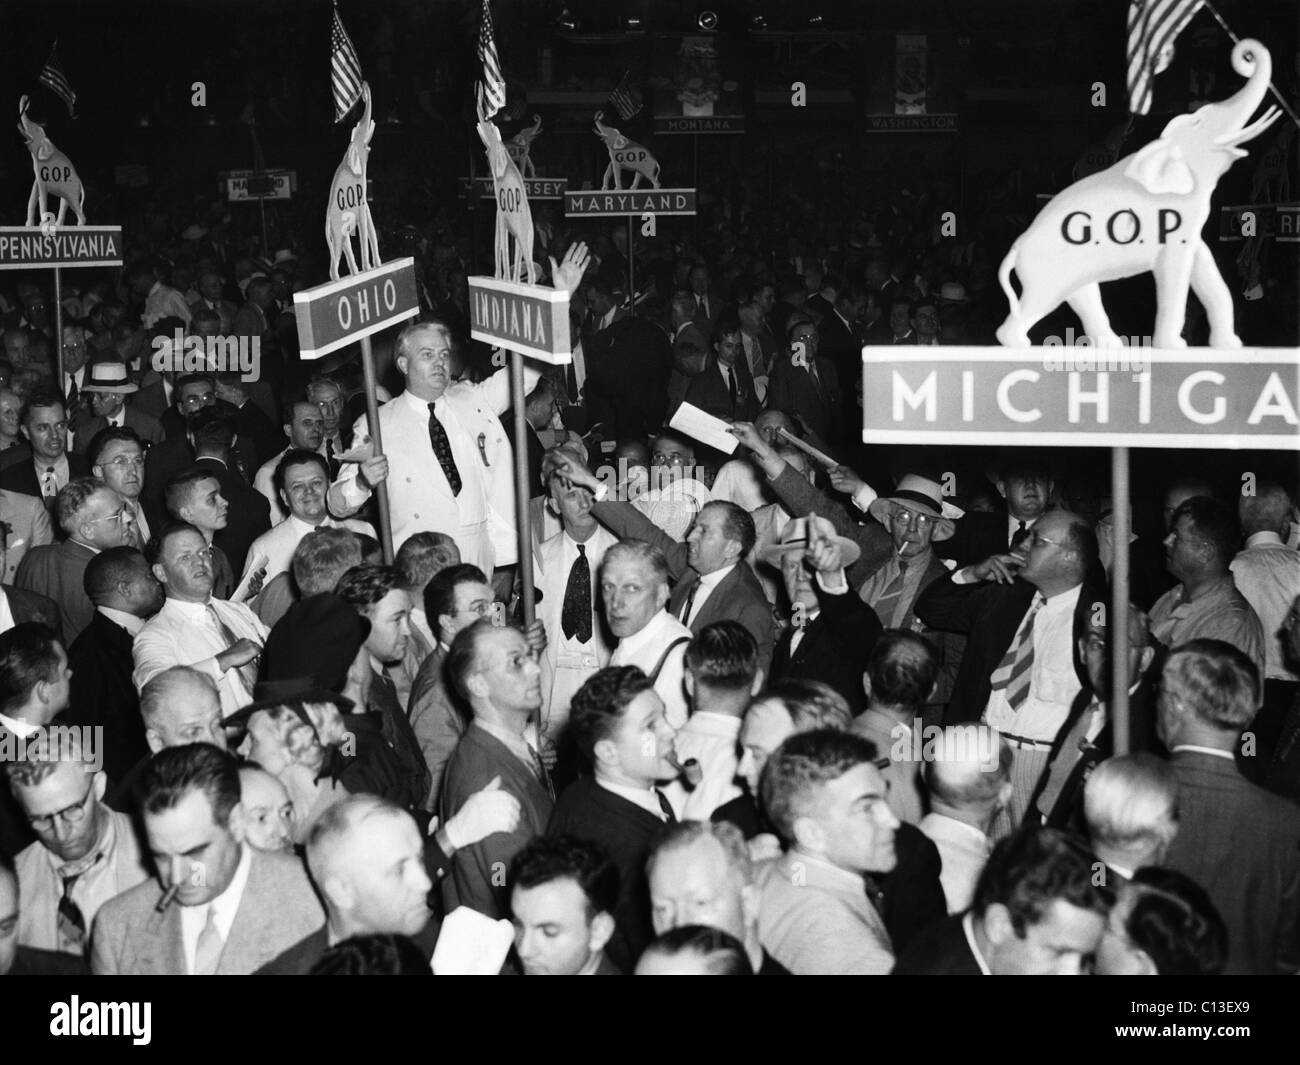 Elezioni US. Centro a sinistra, abito bianco: Ohio Governor John W. Bricker chiede la nomina di Wendell Wilkie alla Convention Nazionale Repubblicana, Philadelphia, Pennsylvania, Giugno 1940. Foto Stock